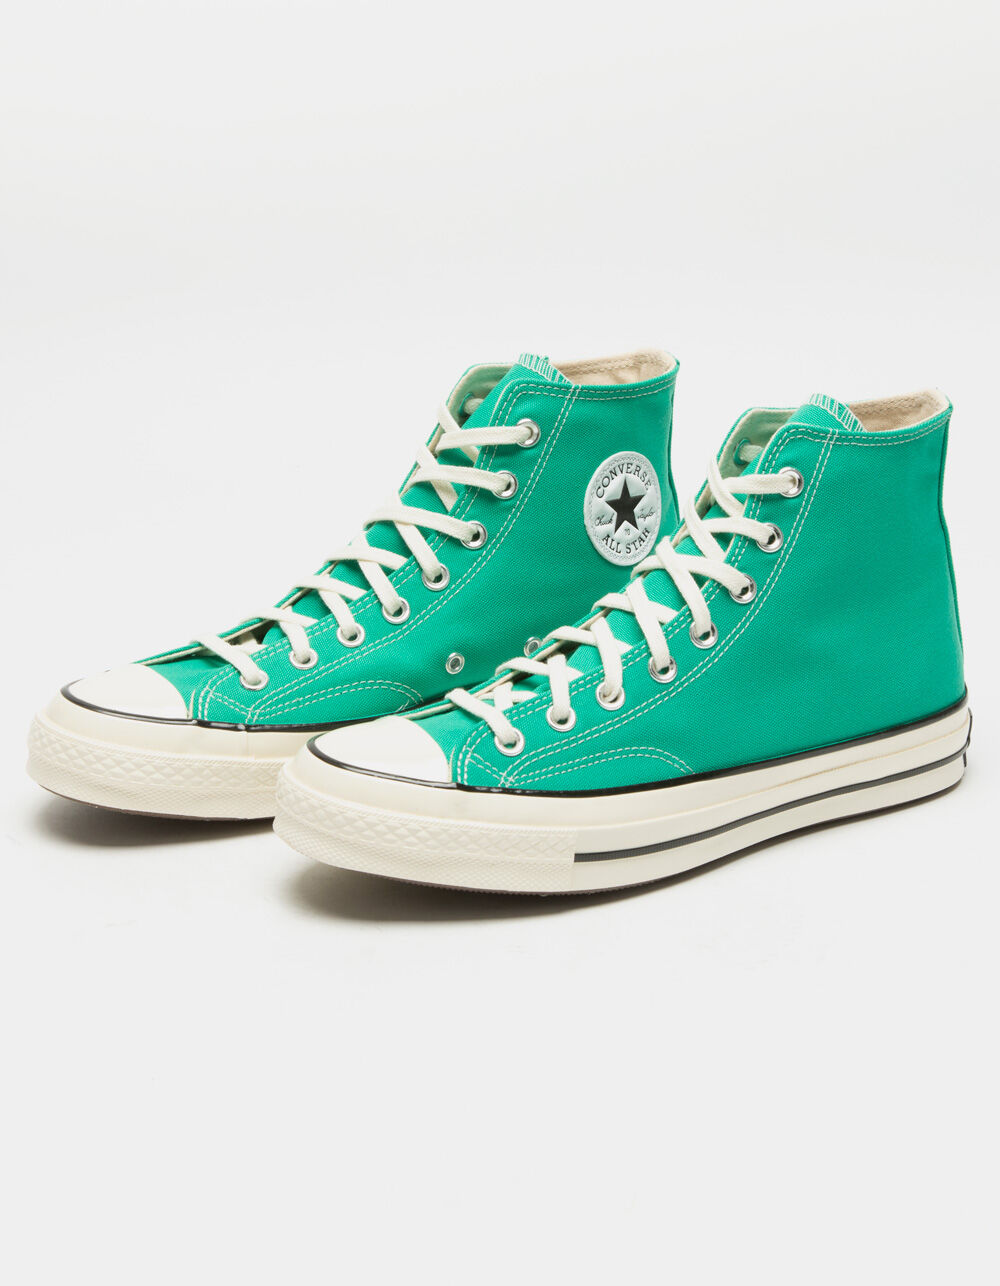 CONVERSE Color Chuck 70 Court Green High Top Shoes - AQUA | Tillys